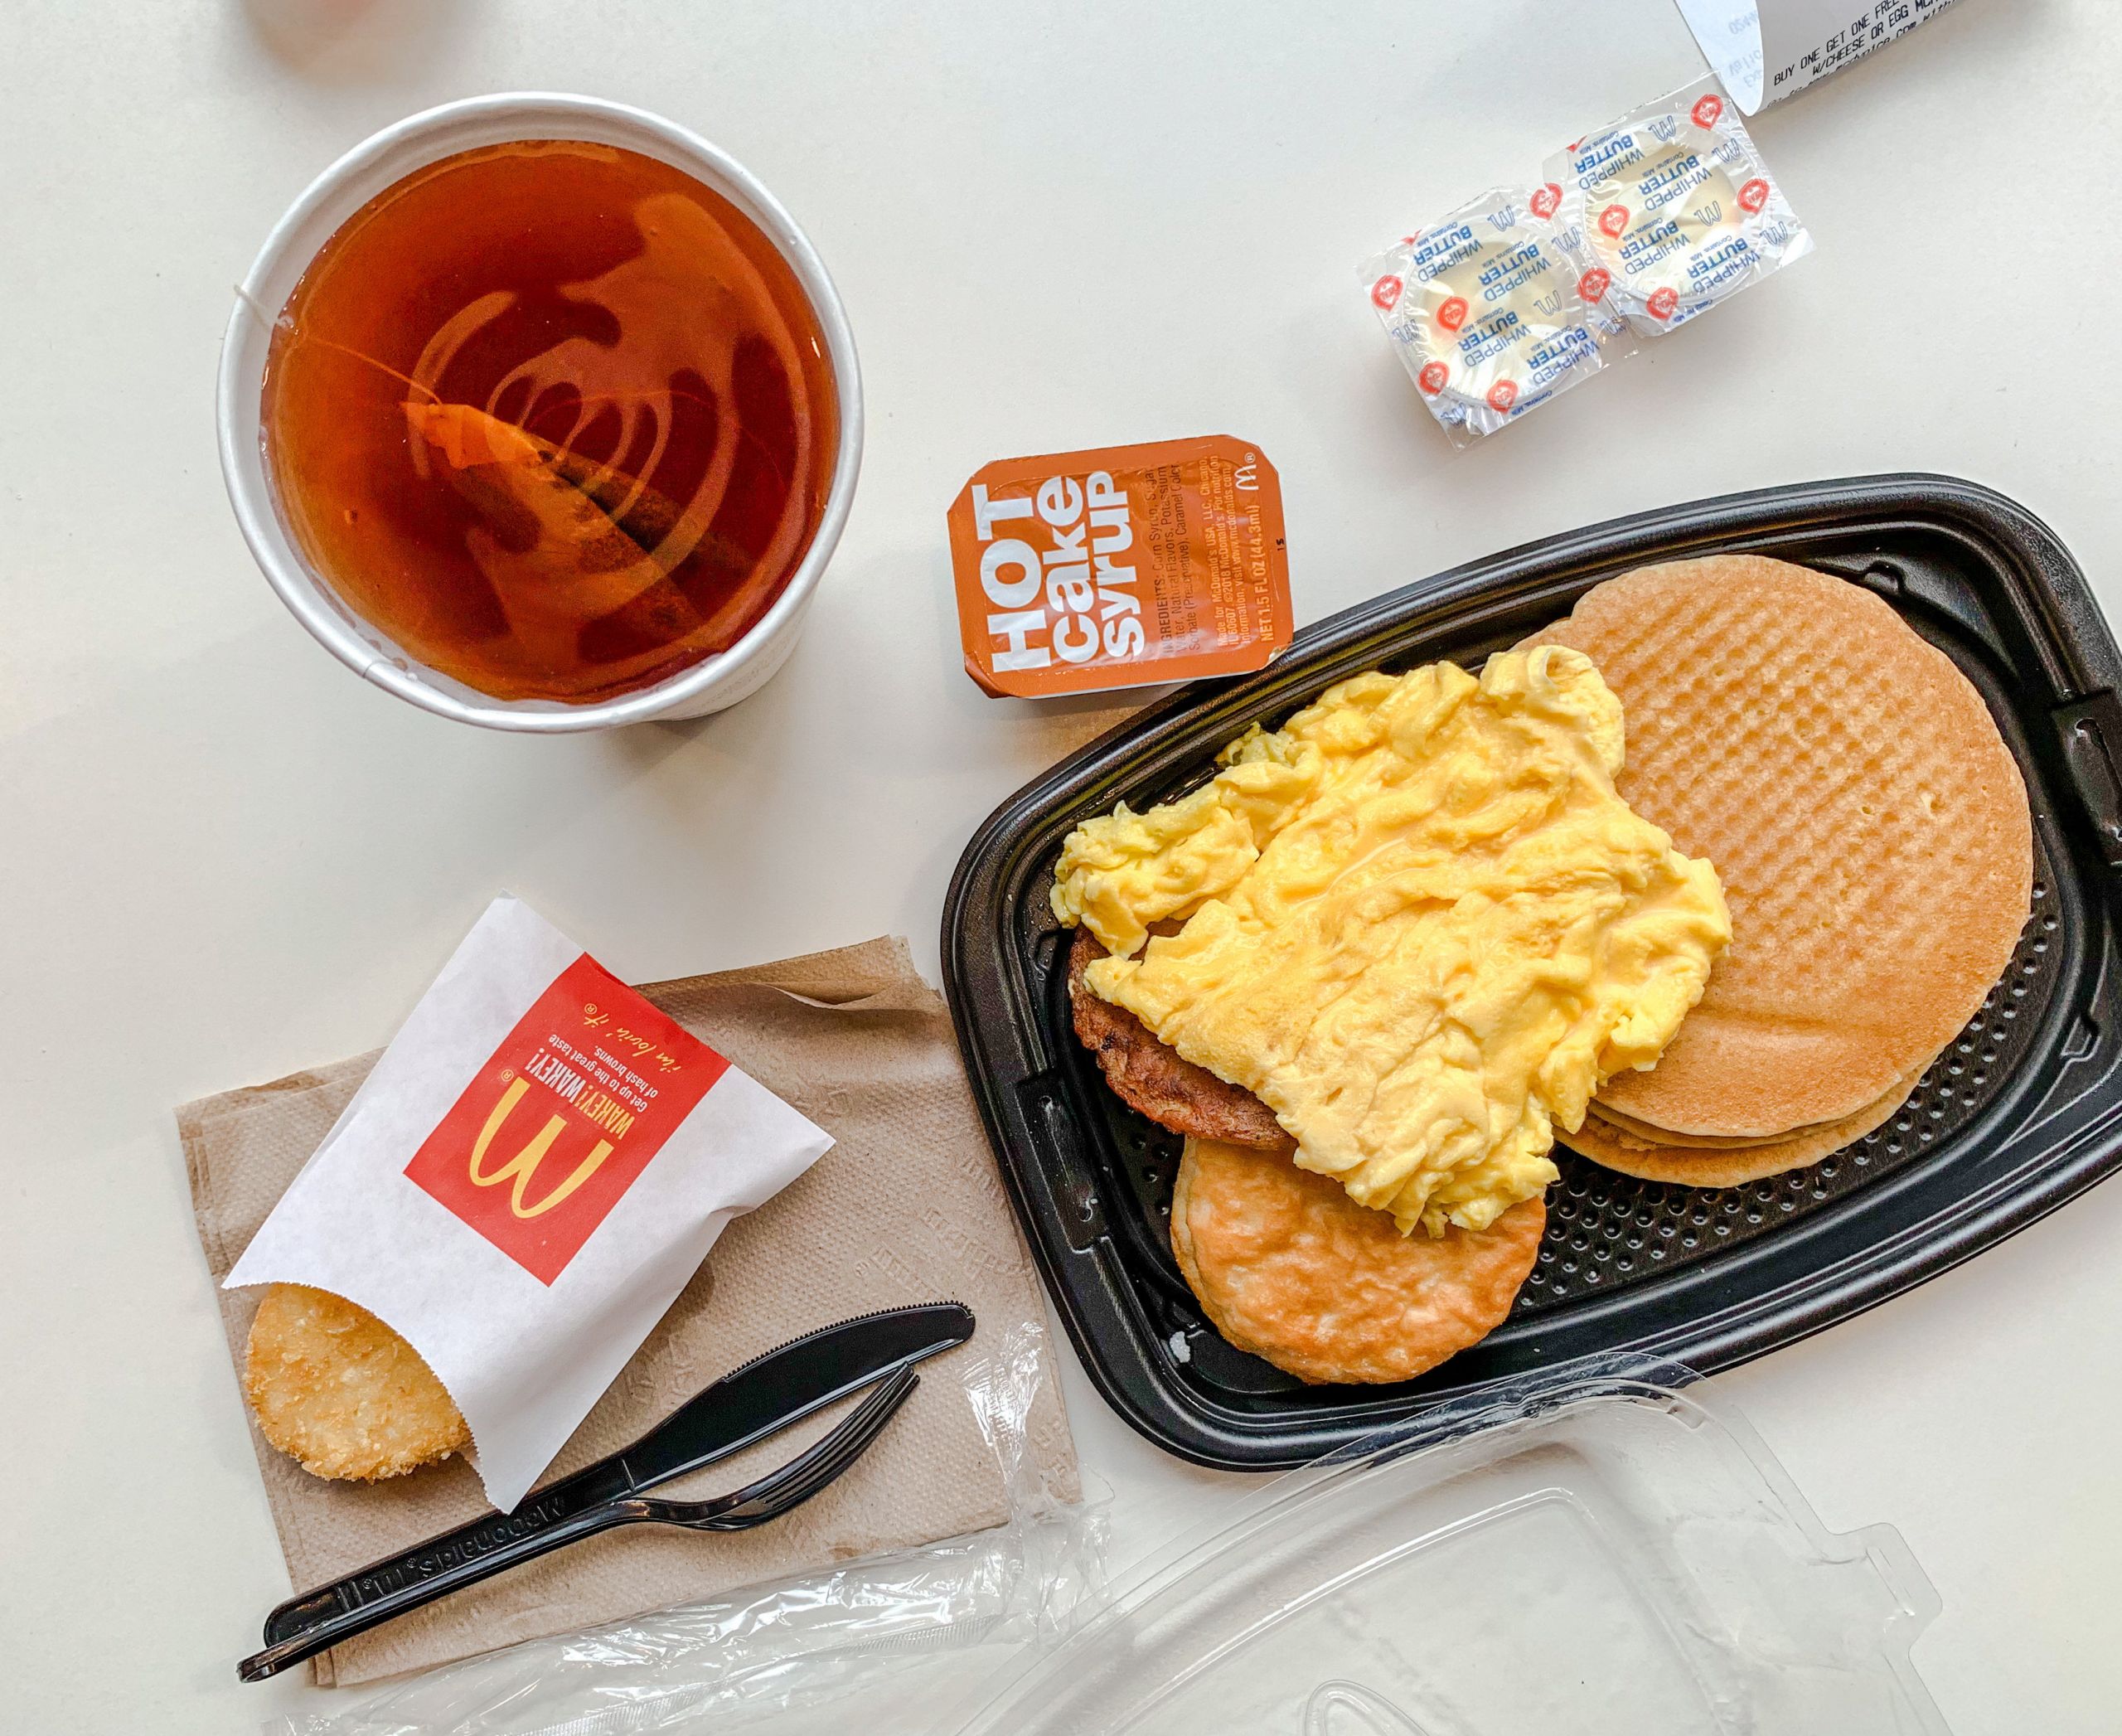 Mcdonalds Healthy Breakfast Menu
 Simple Tutorial for Dummies Mcdonalds Breakfast Menu Hours